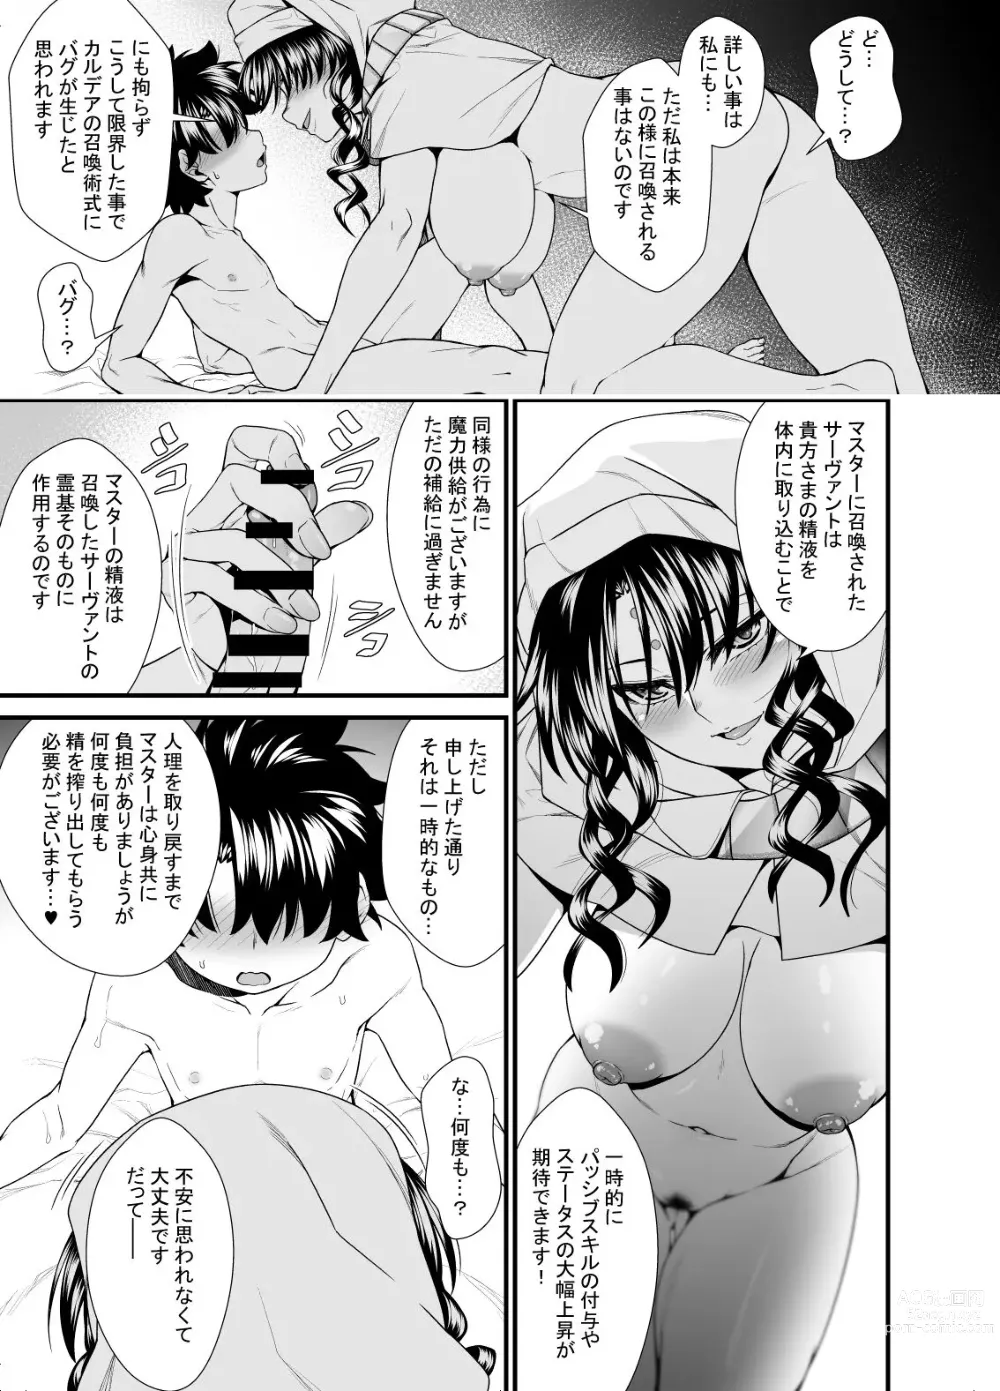 Page 5 of doujinshi OneShota Manga #01b